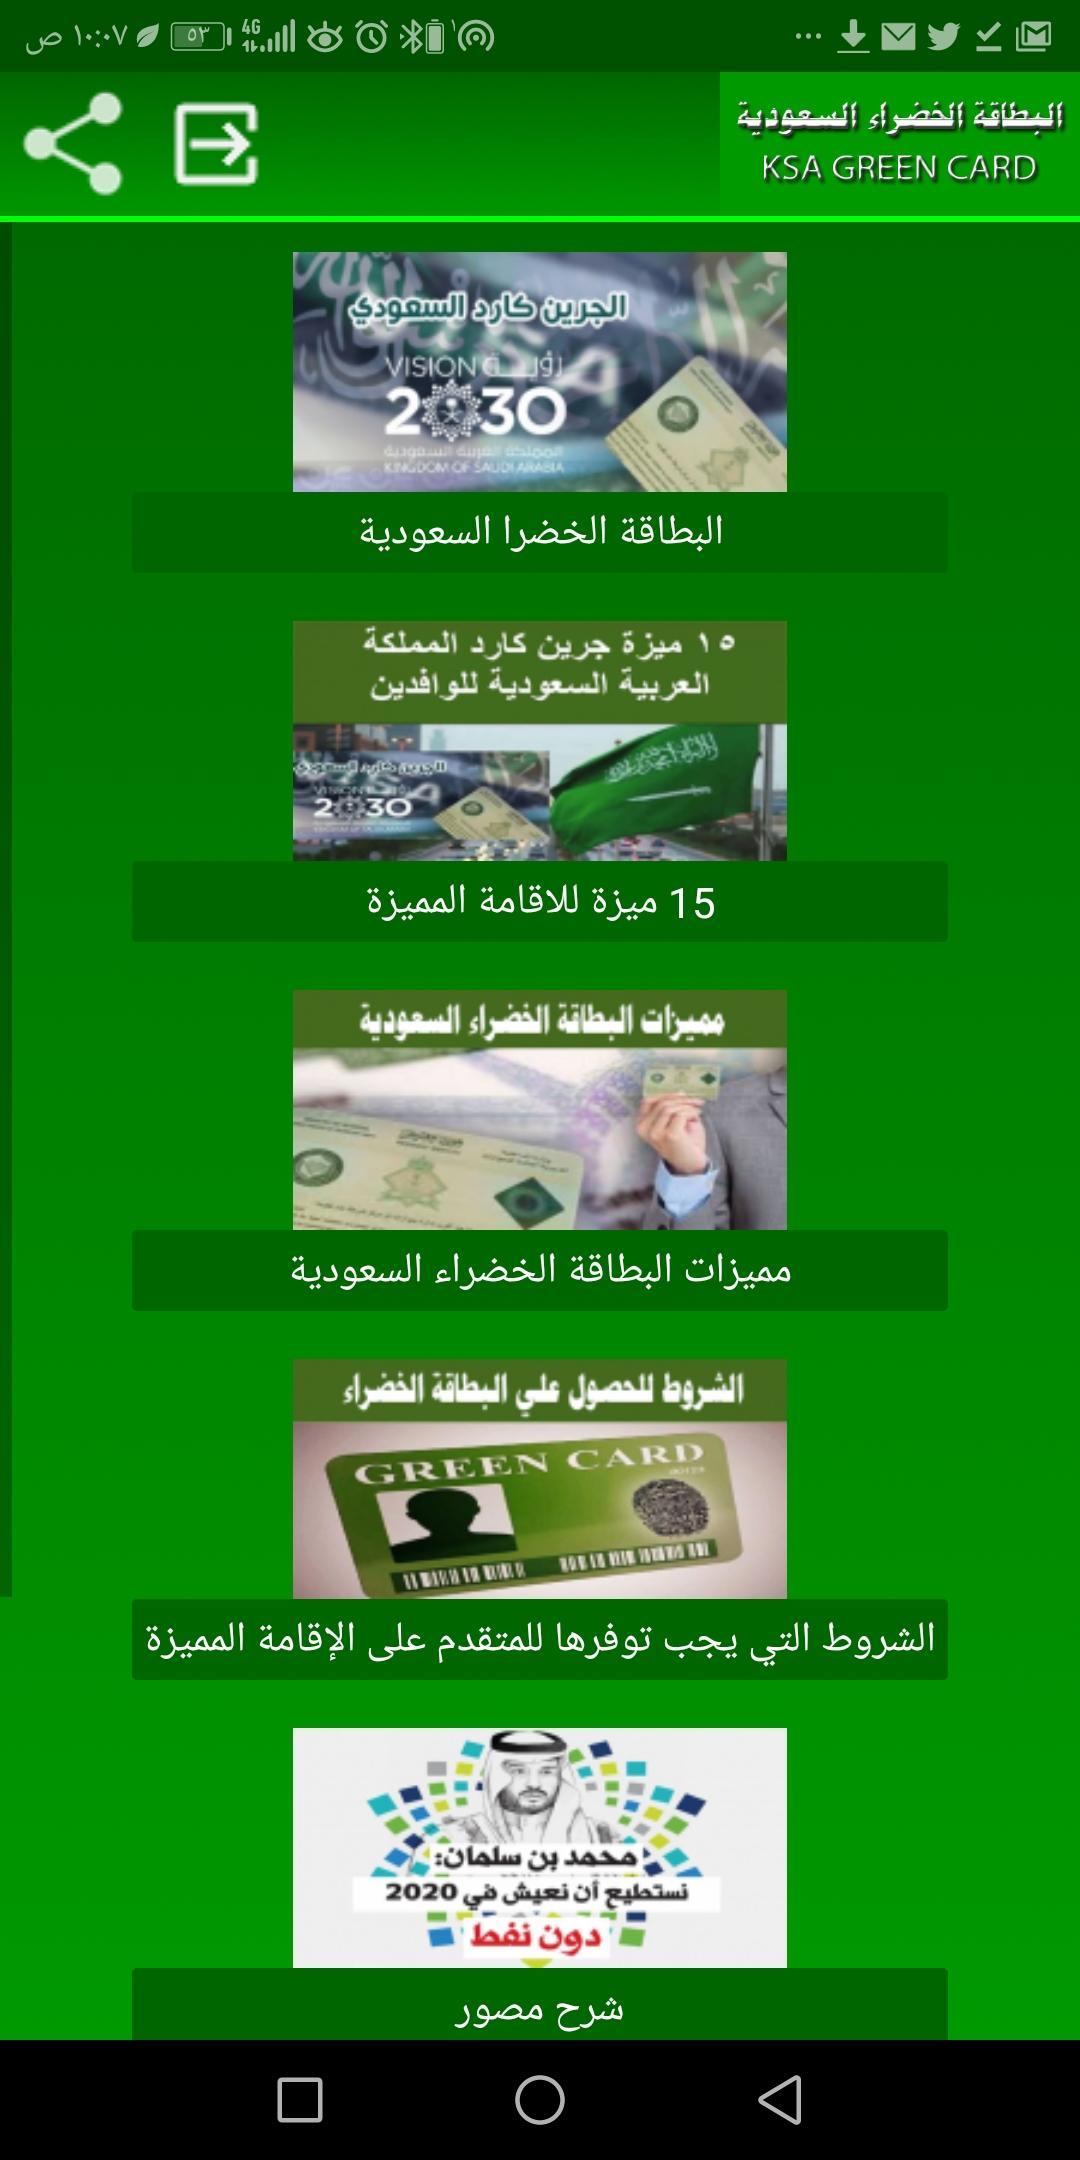 الجرين كارد السعودي - اقامة بلس for Android - APK Download